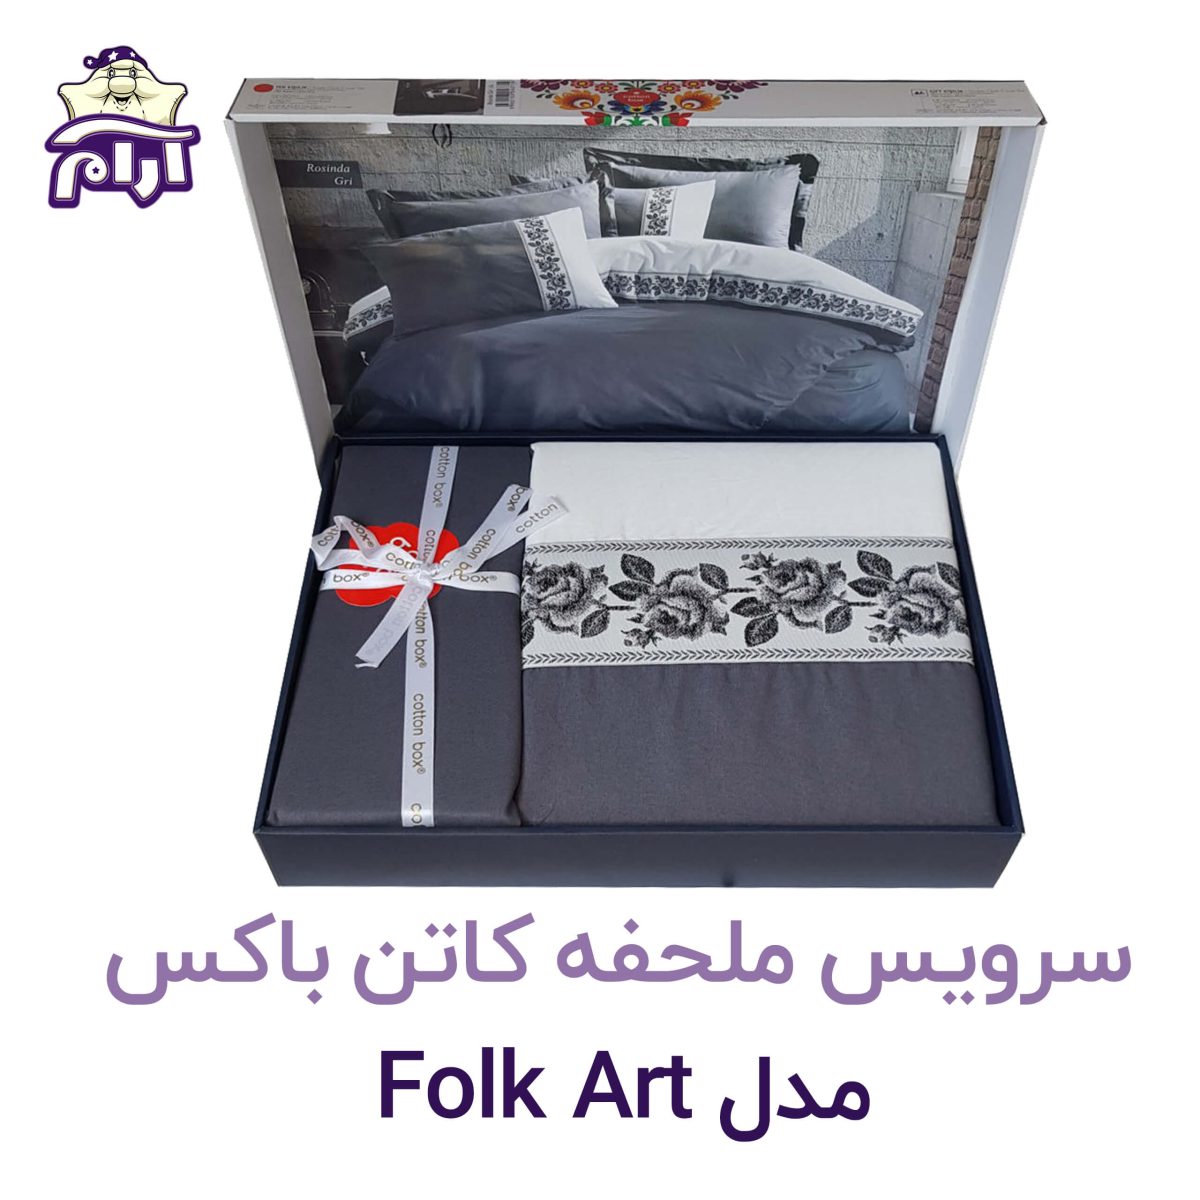 سرویس ملحفه کاتن باکس مدل Folk Art دو نفره ARAMKHAB.COM